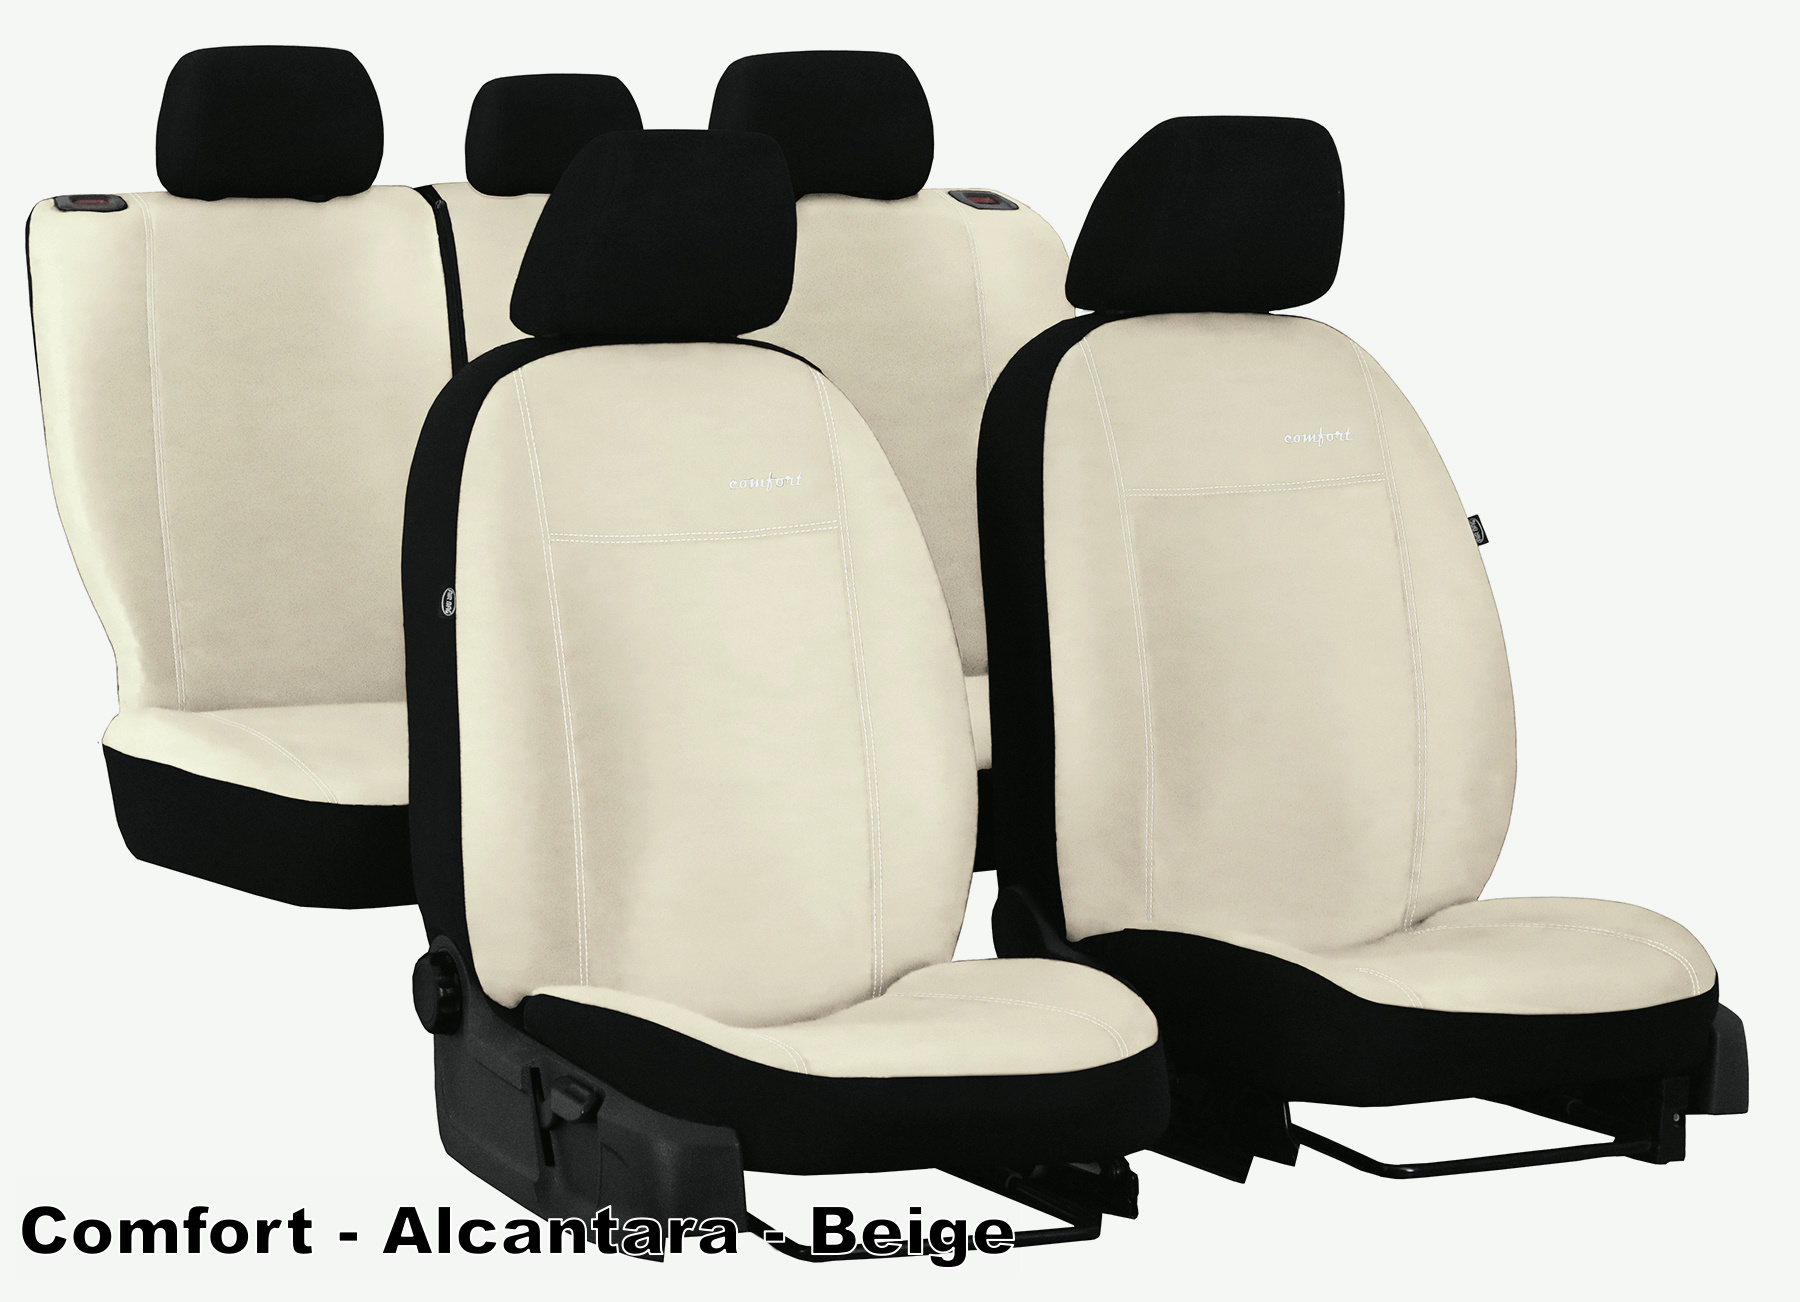 https://cdn.webshopapp.com/shops/100750/files/365021170/pok-ter-massgenauer-stoff-autositzbezug-fuer-seat.jpg